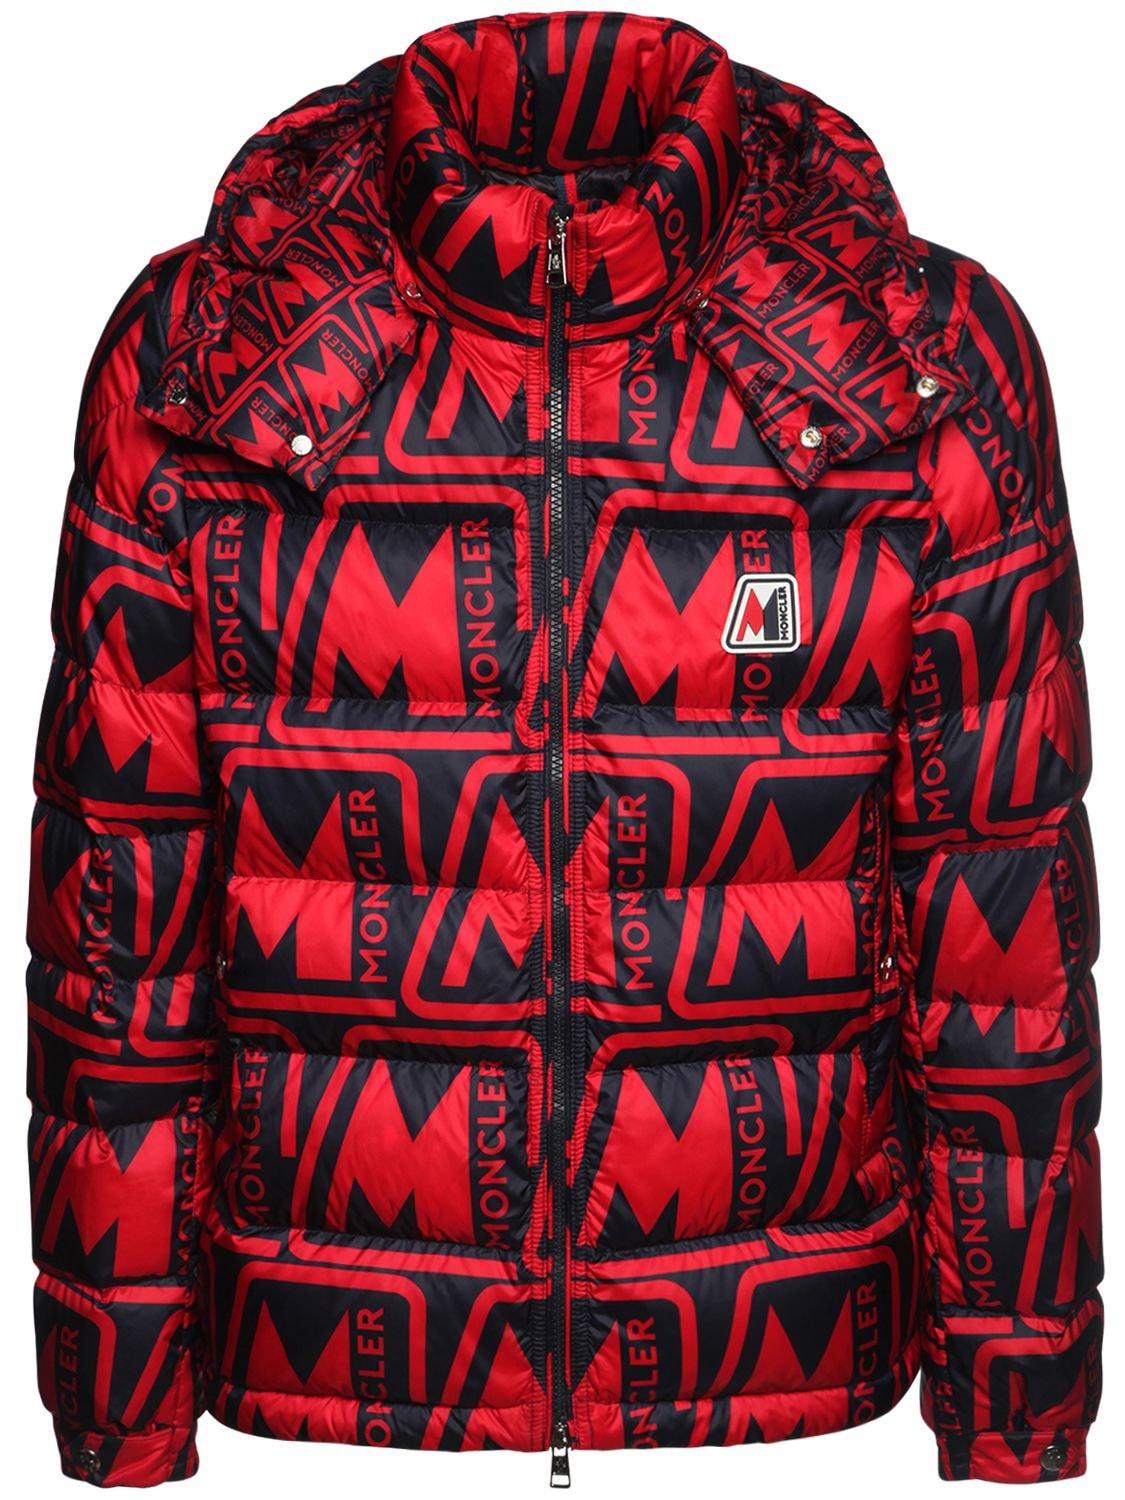 Moncler Goose Frioland Jacket in Red/Black (Red) for Men - Save 20% - Lyst